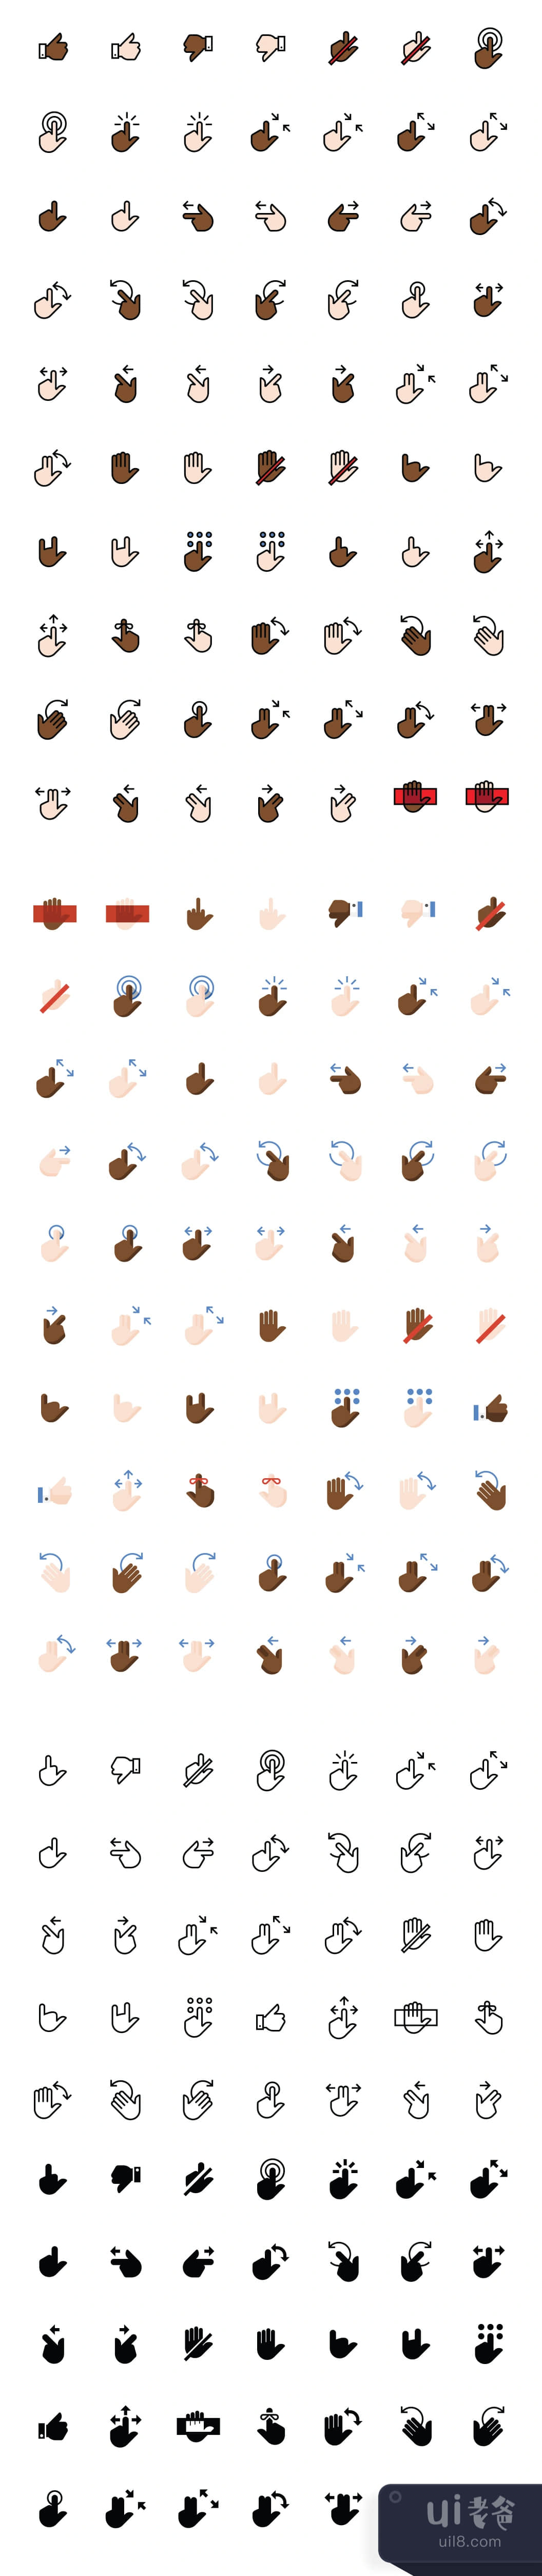 210个手势图标 (210 Hand Gesture Icons)插图